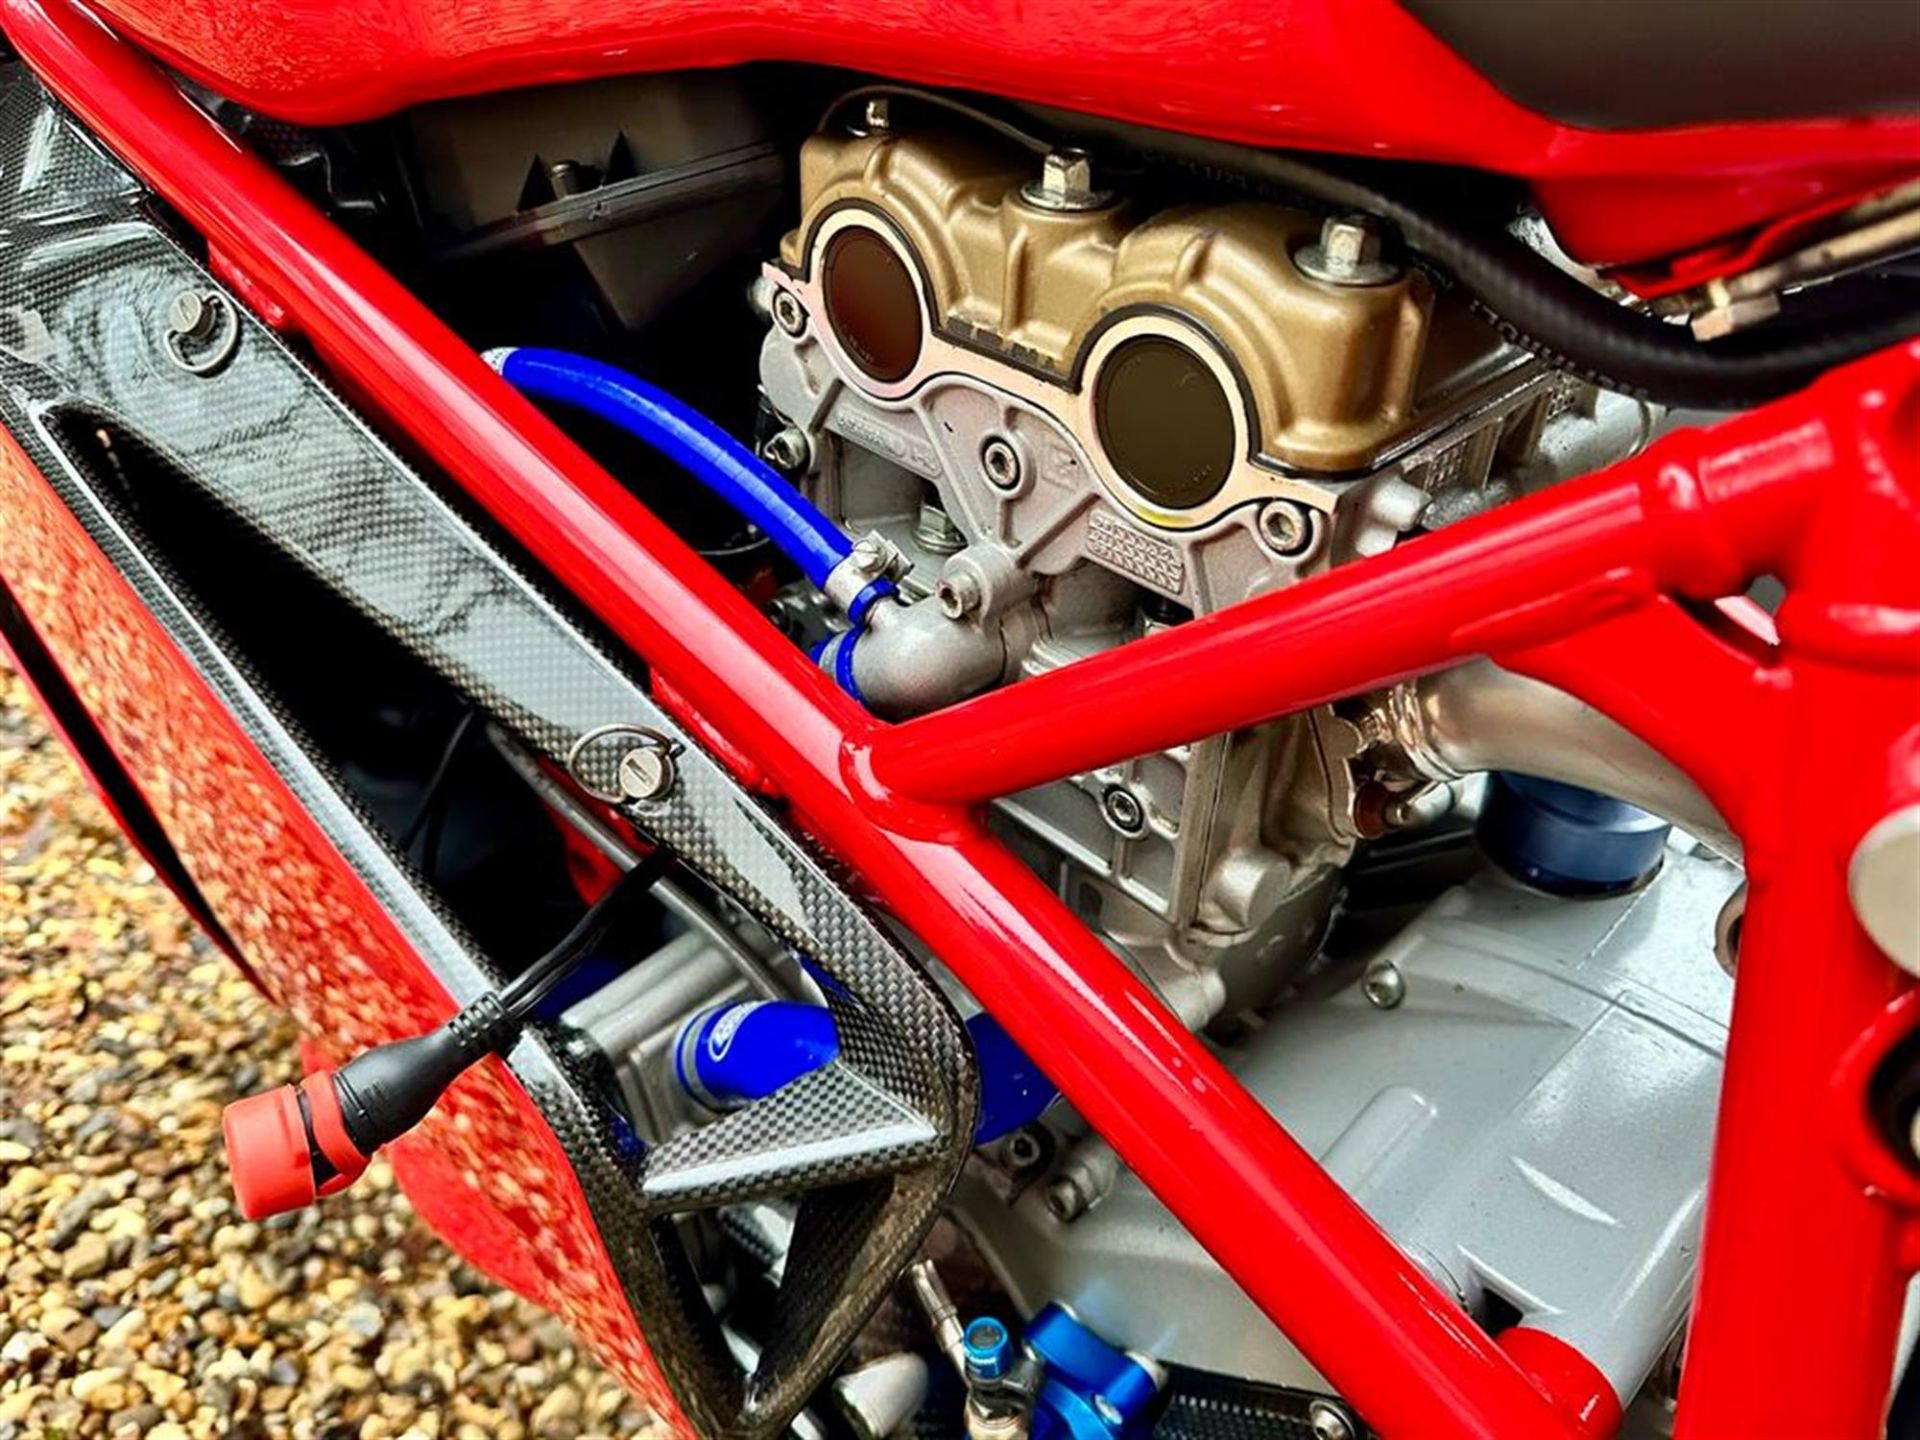 2004 Ducati 749R 749cc - Image 9 of 10